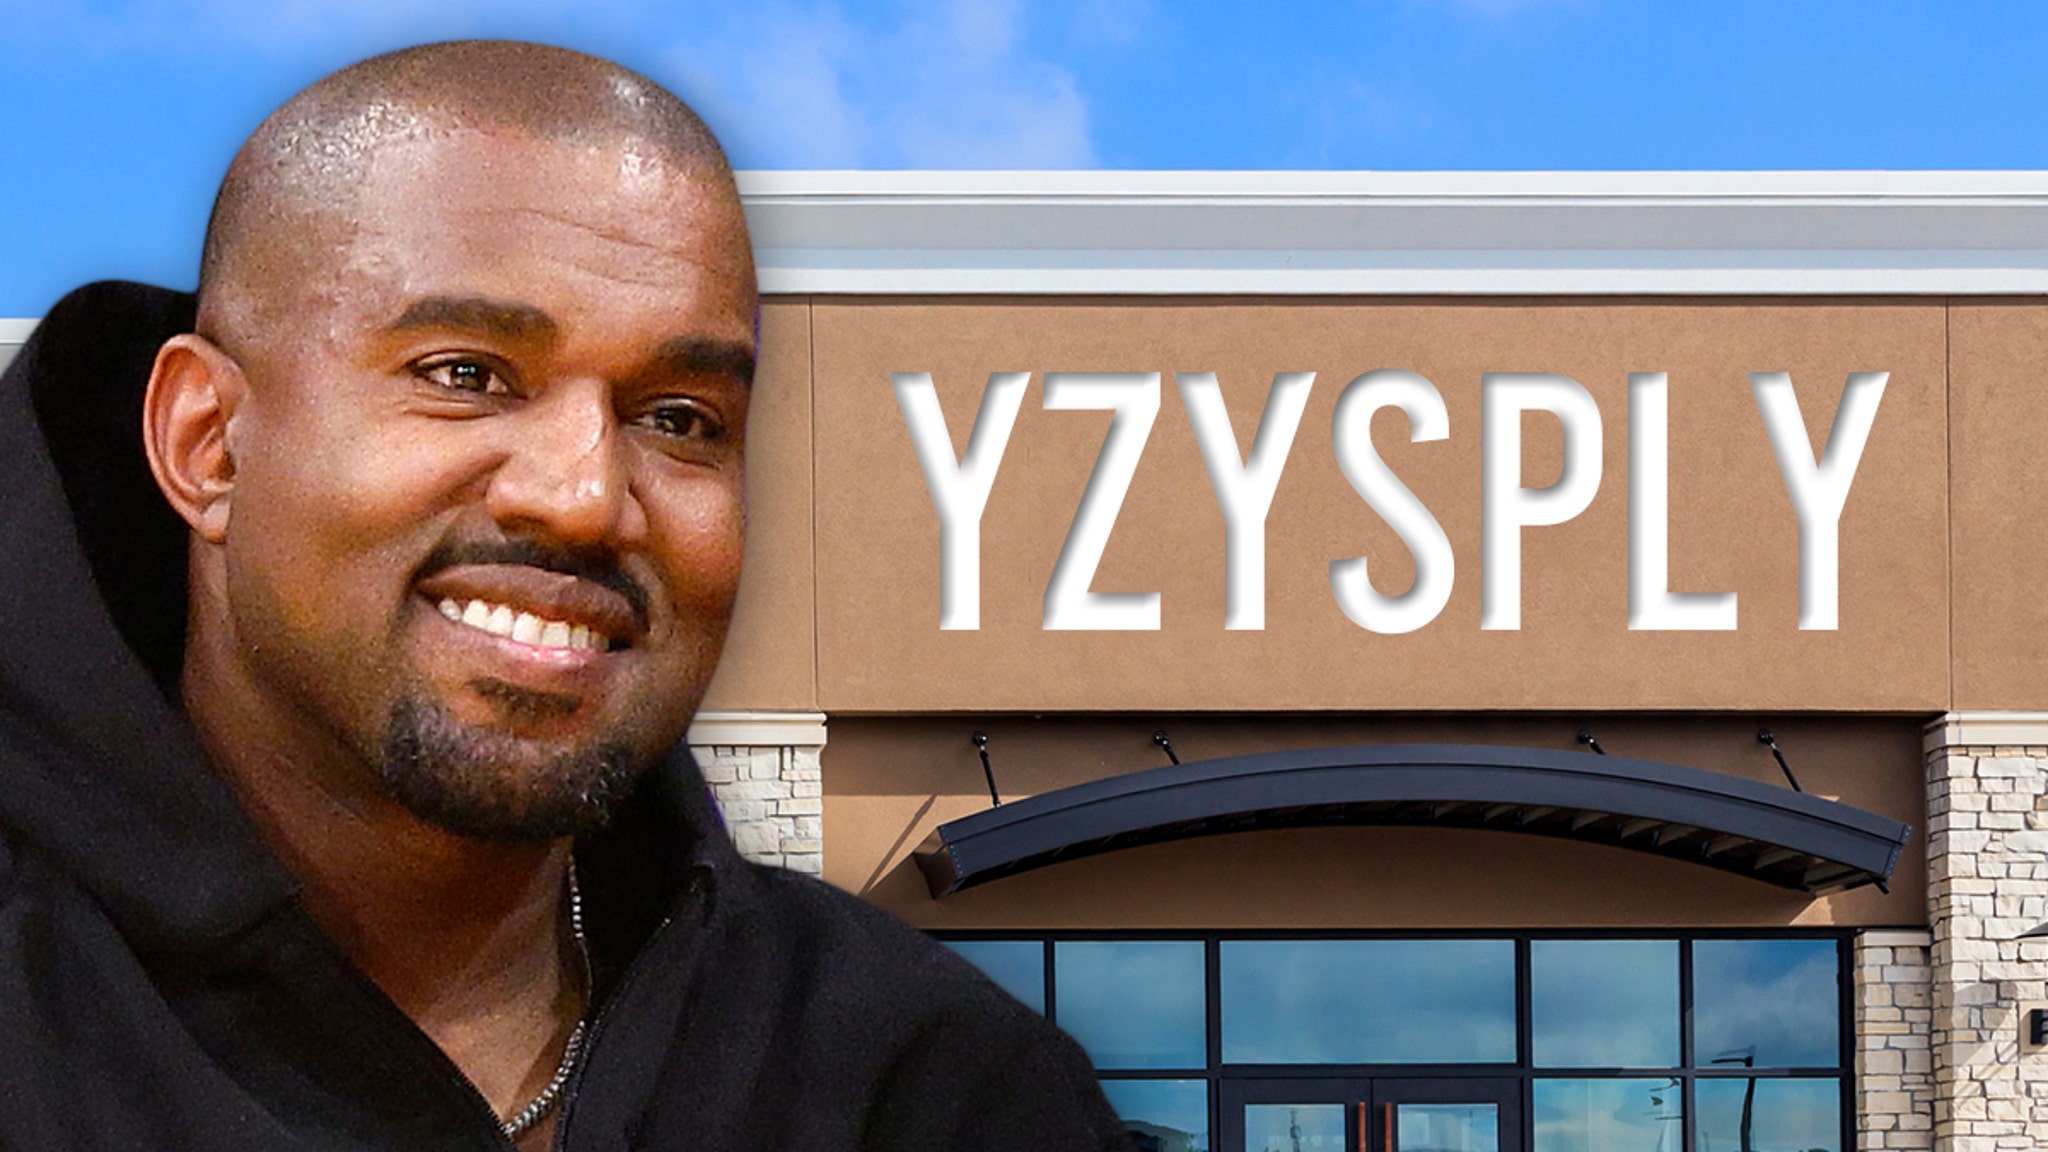 Kanye West presenta marca registrada para abrir tiendas minoristas YZYSPLY